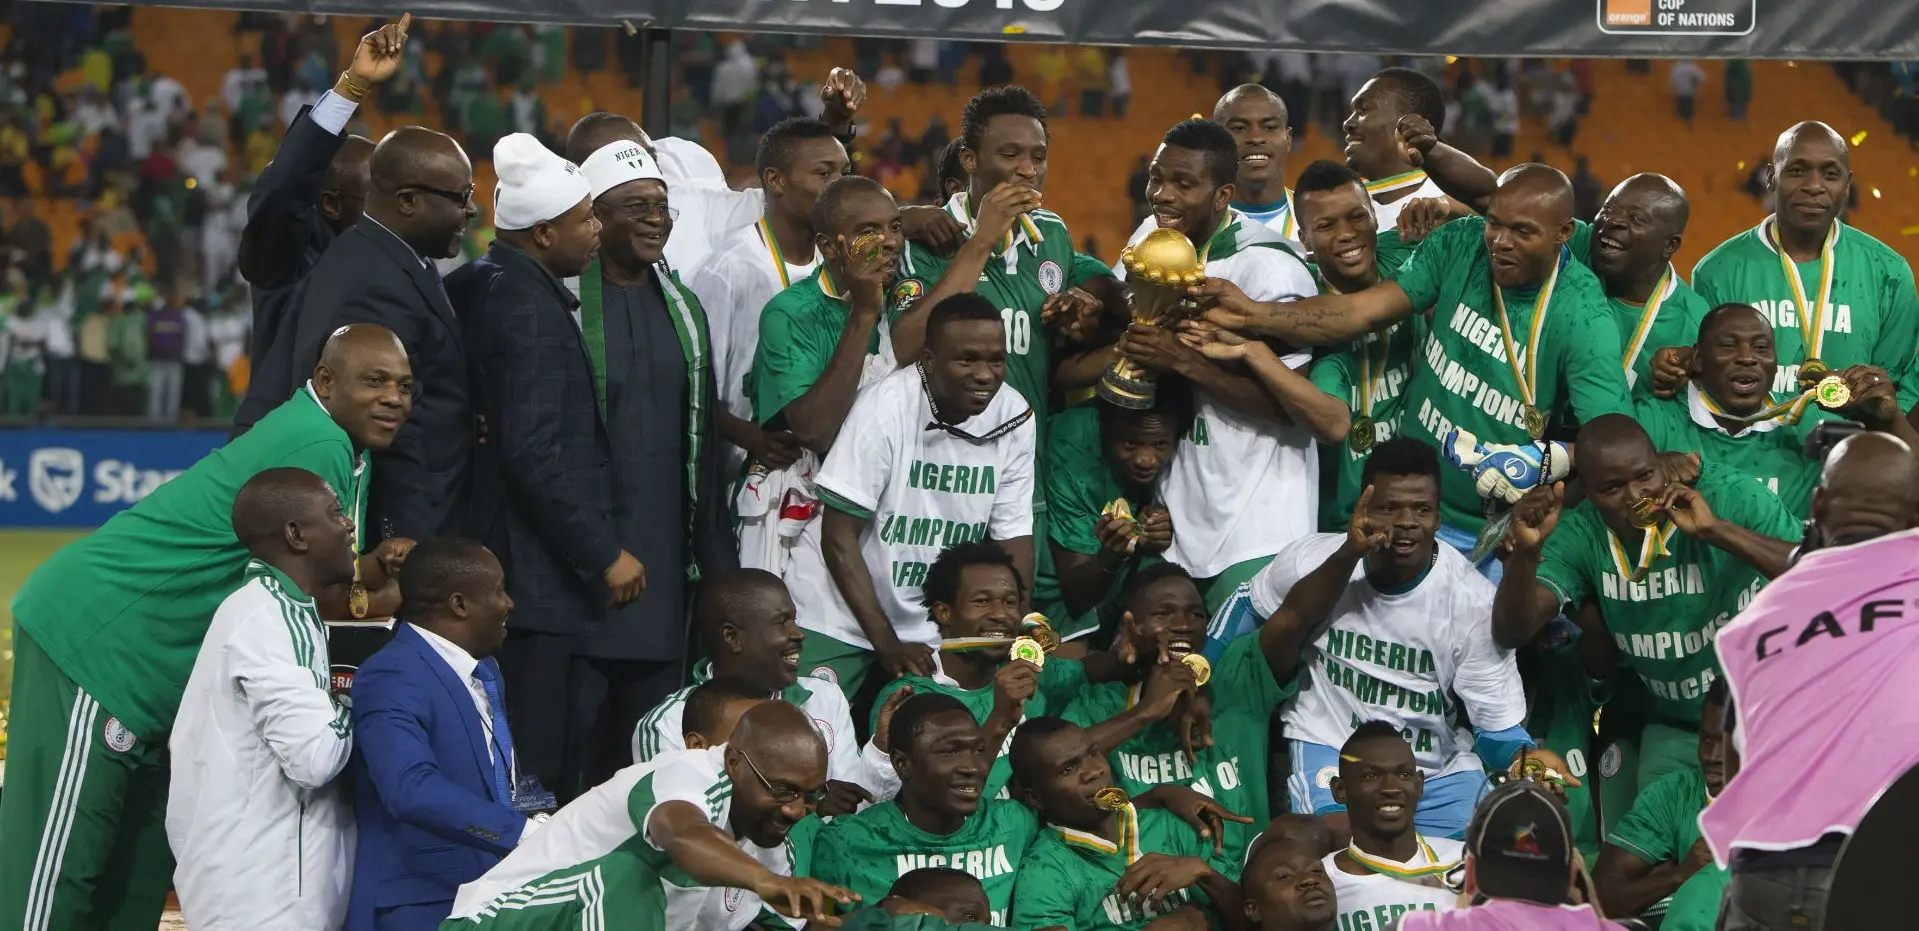 Au Nigéria, des légendes du football vont jouer un match pour encourager la participation aux élections